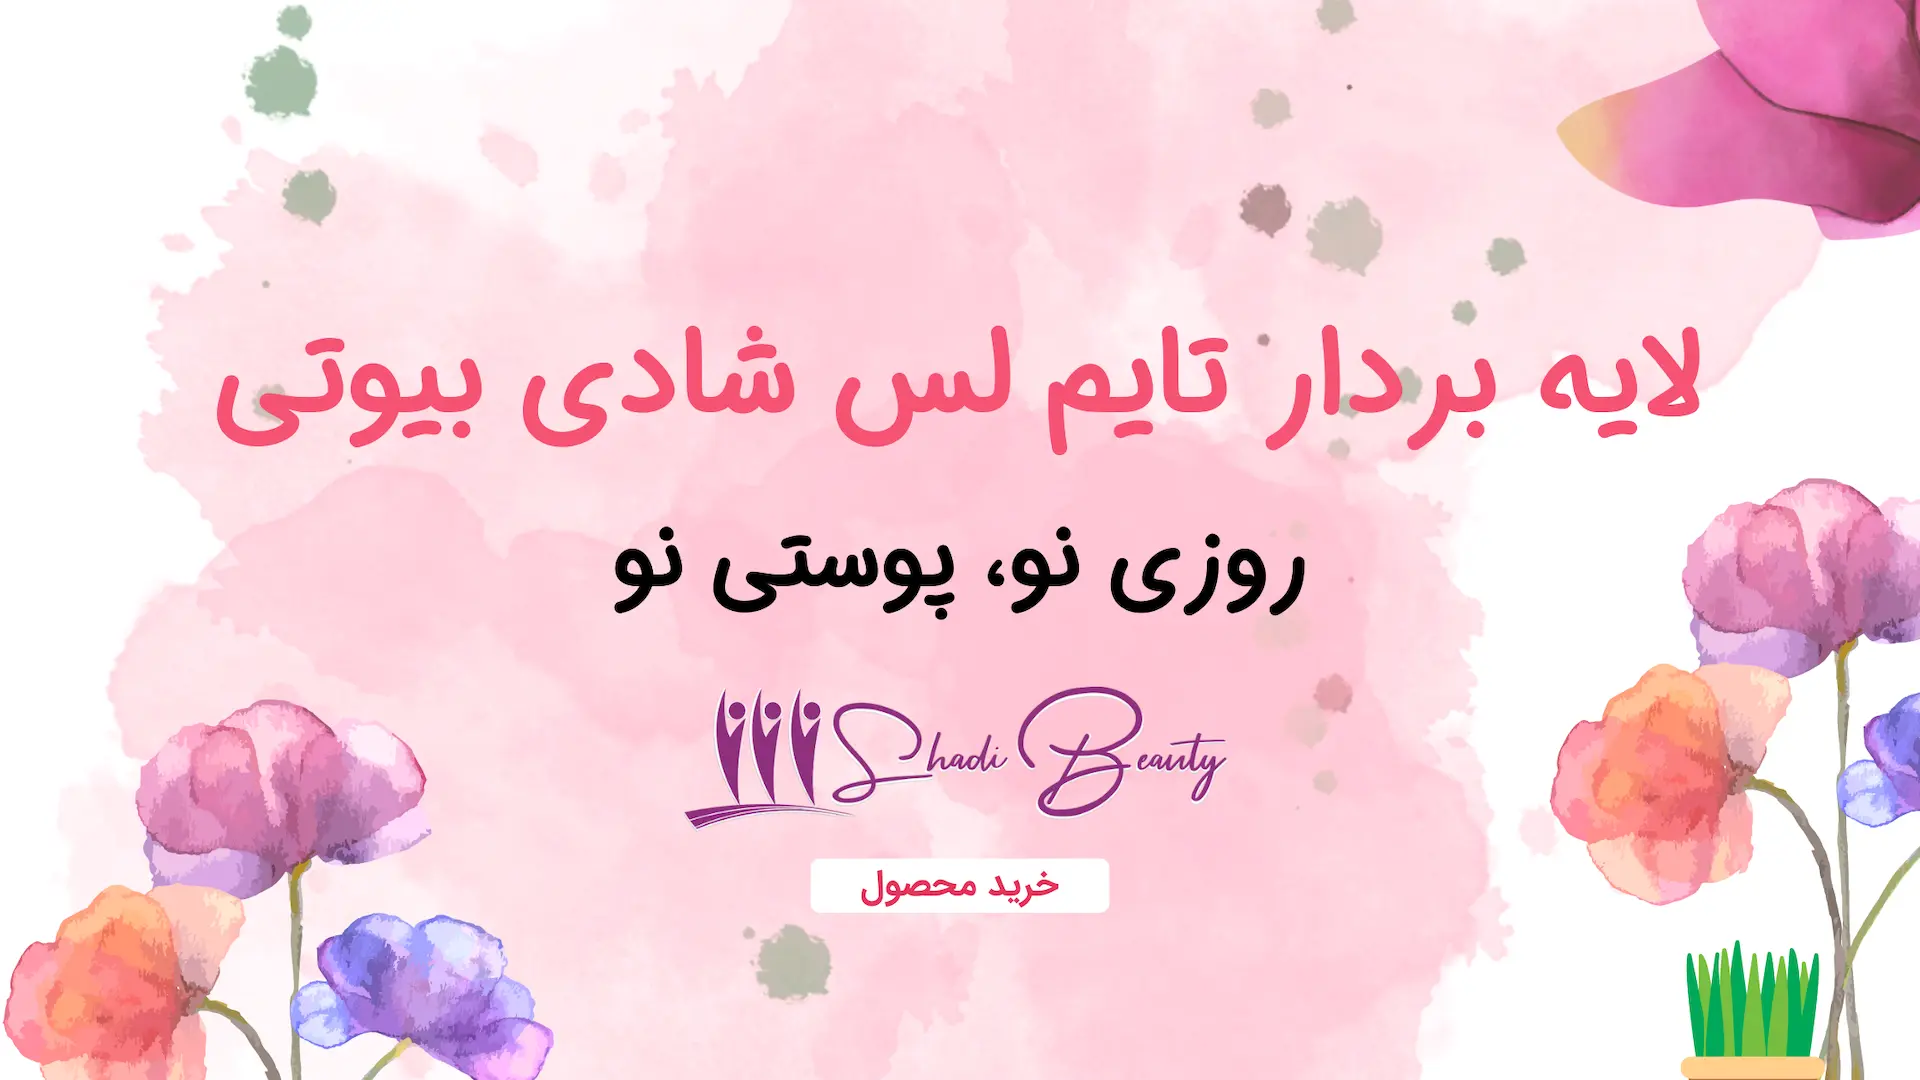 Shadi Beauty Aesthetic Timeless Peeling Banner